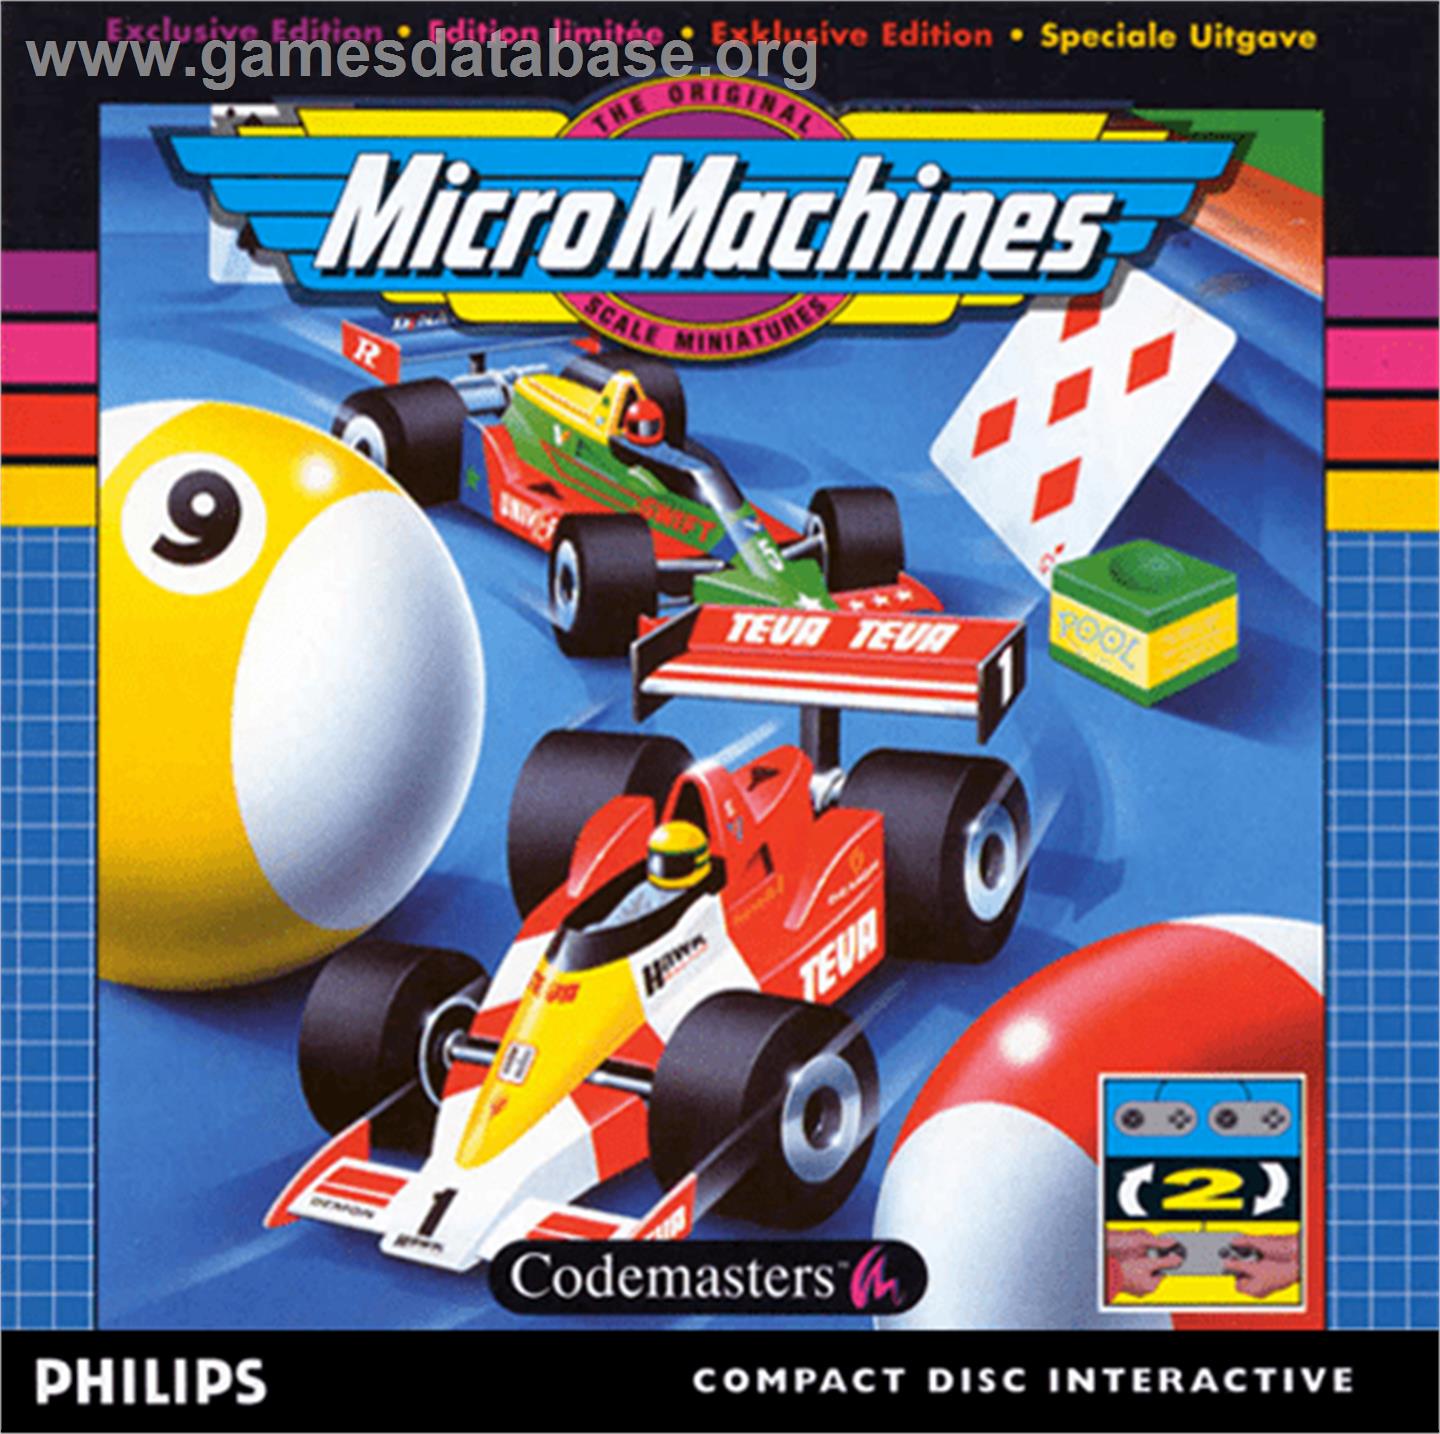 Micro Machines - Philips CD-i - Artwork - Box